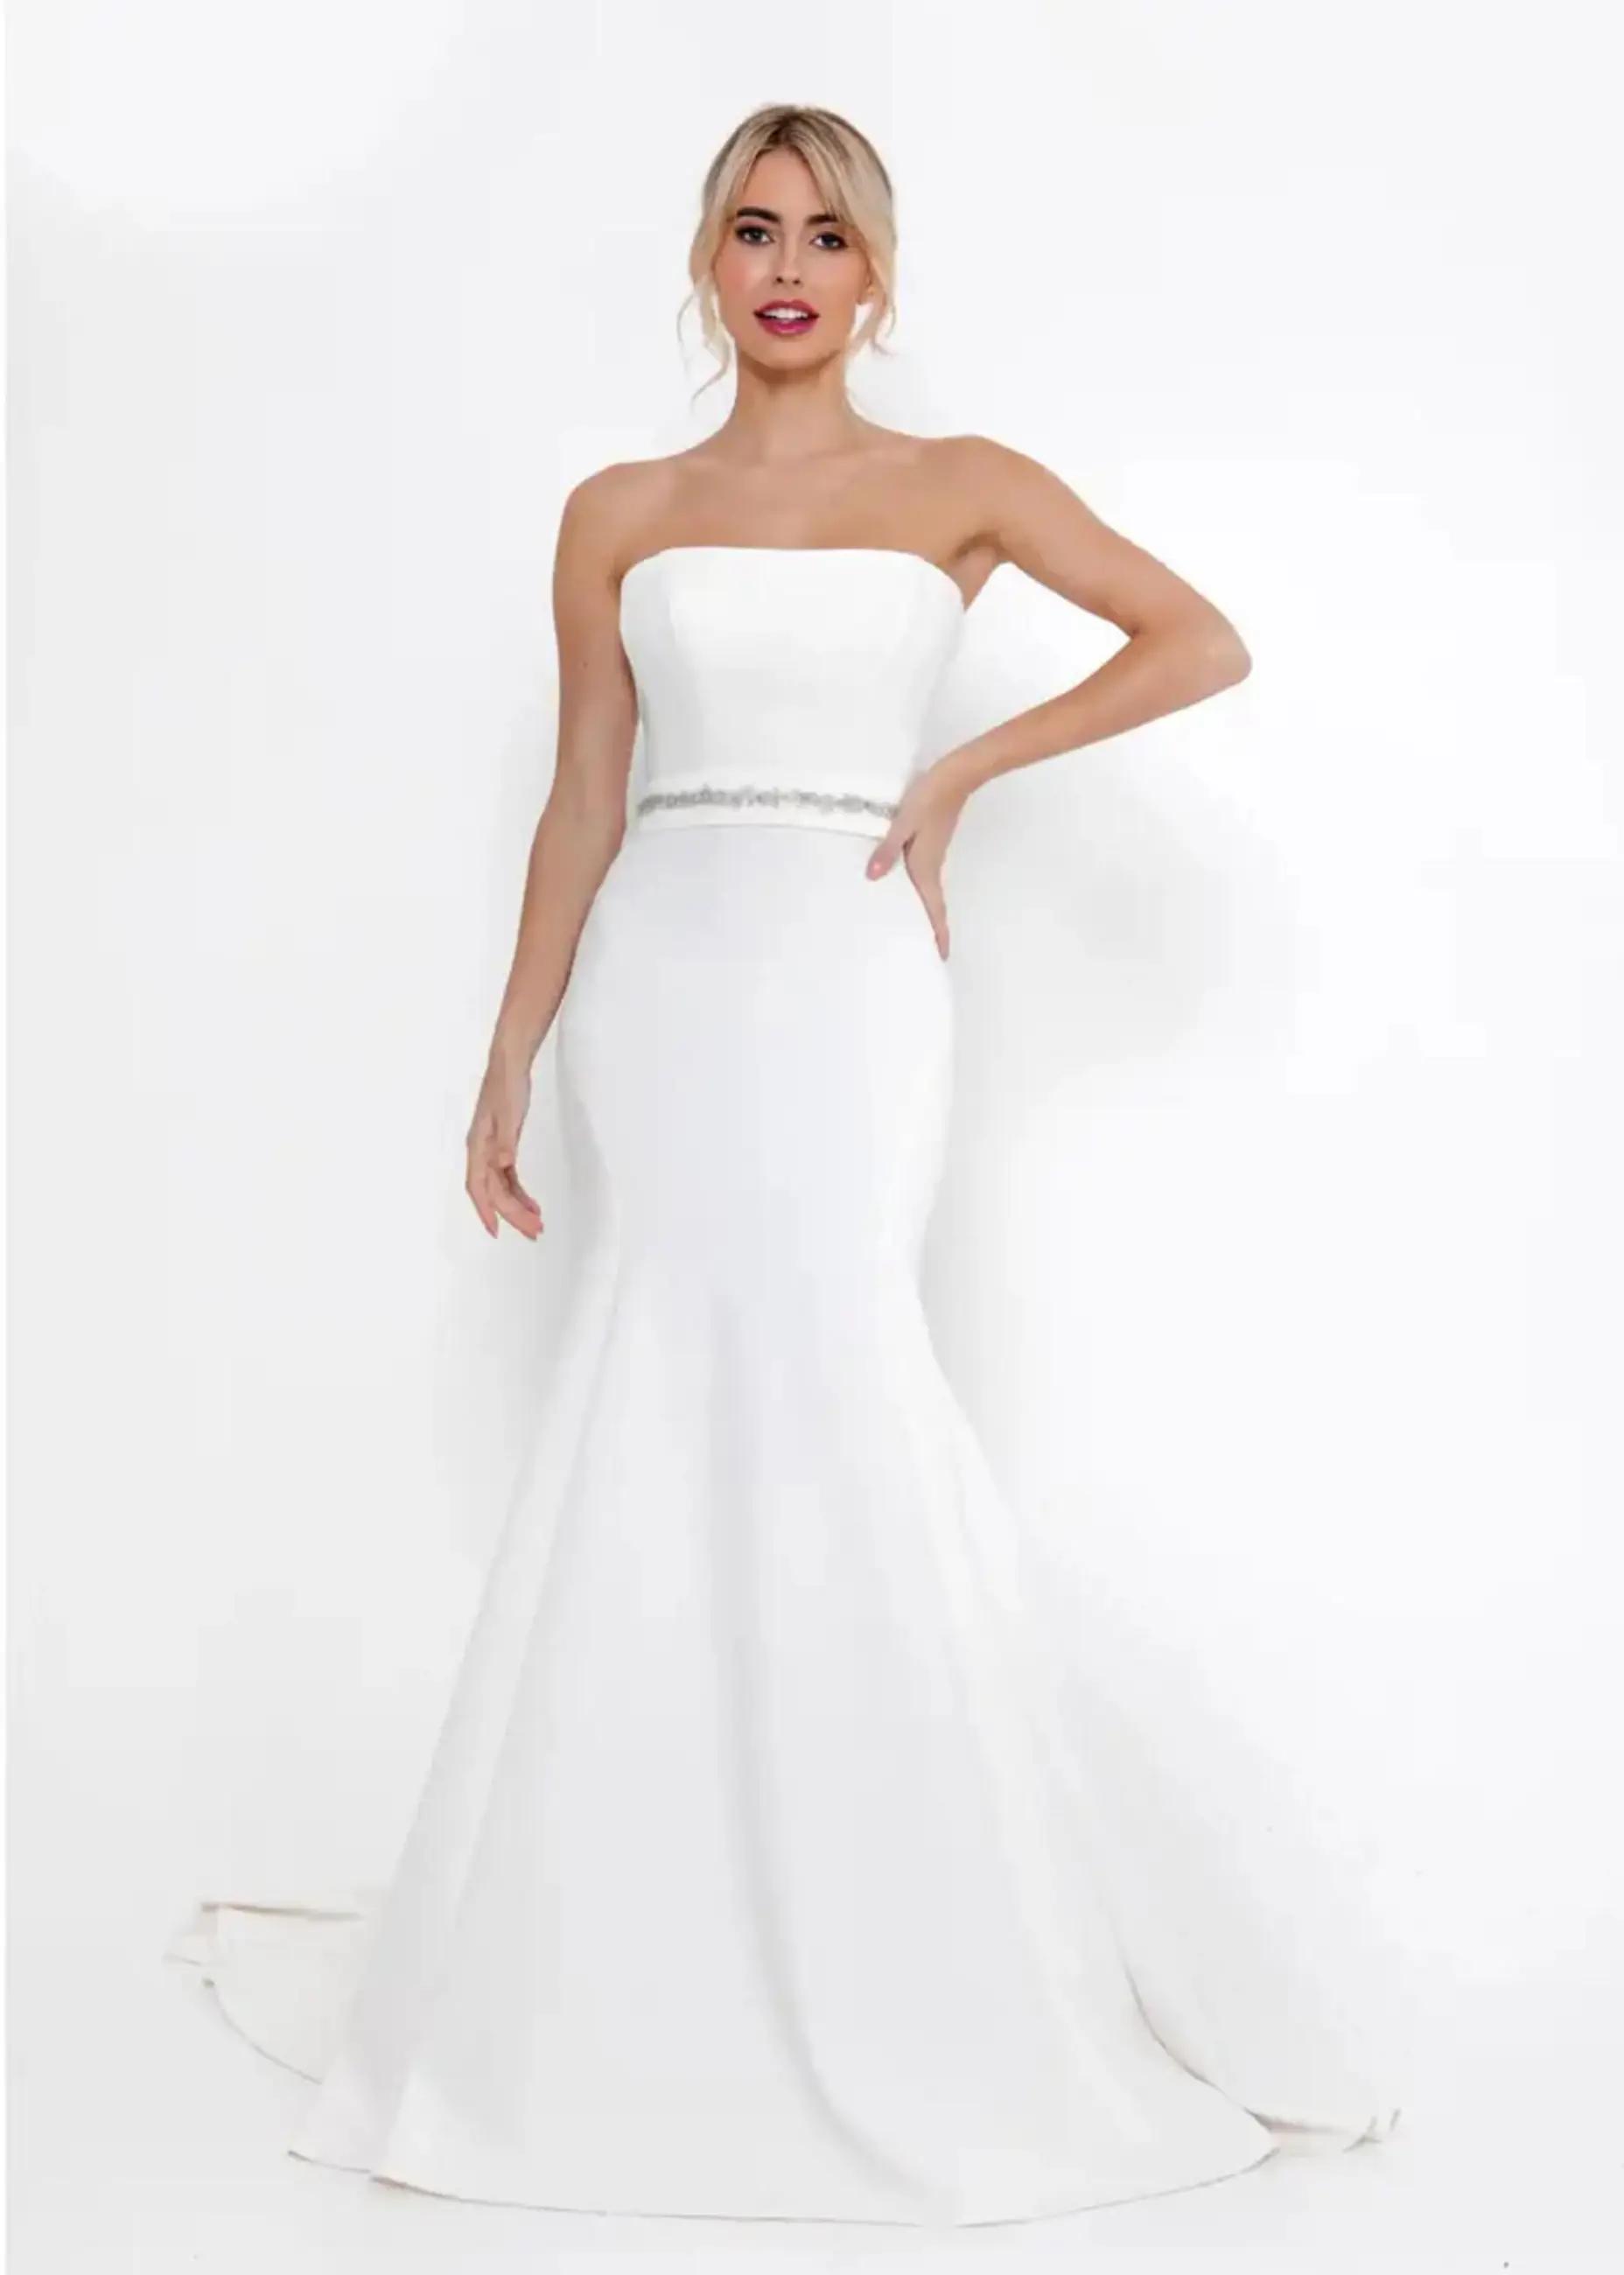 Model wearing a white gown by Randy fenoli